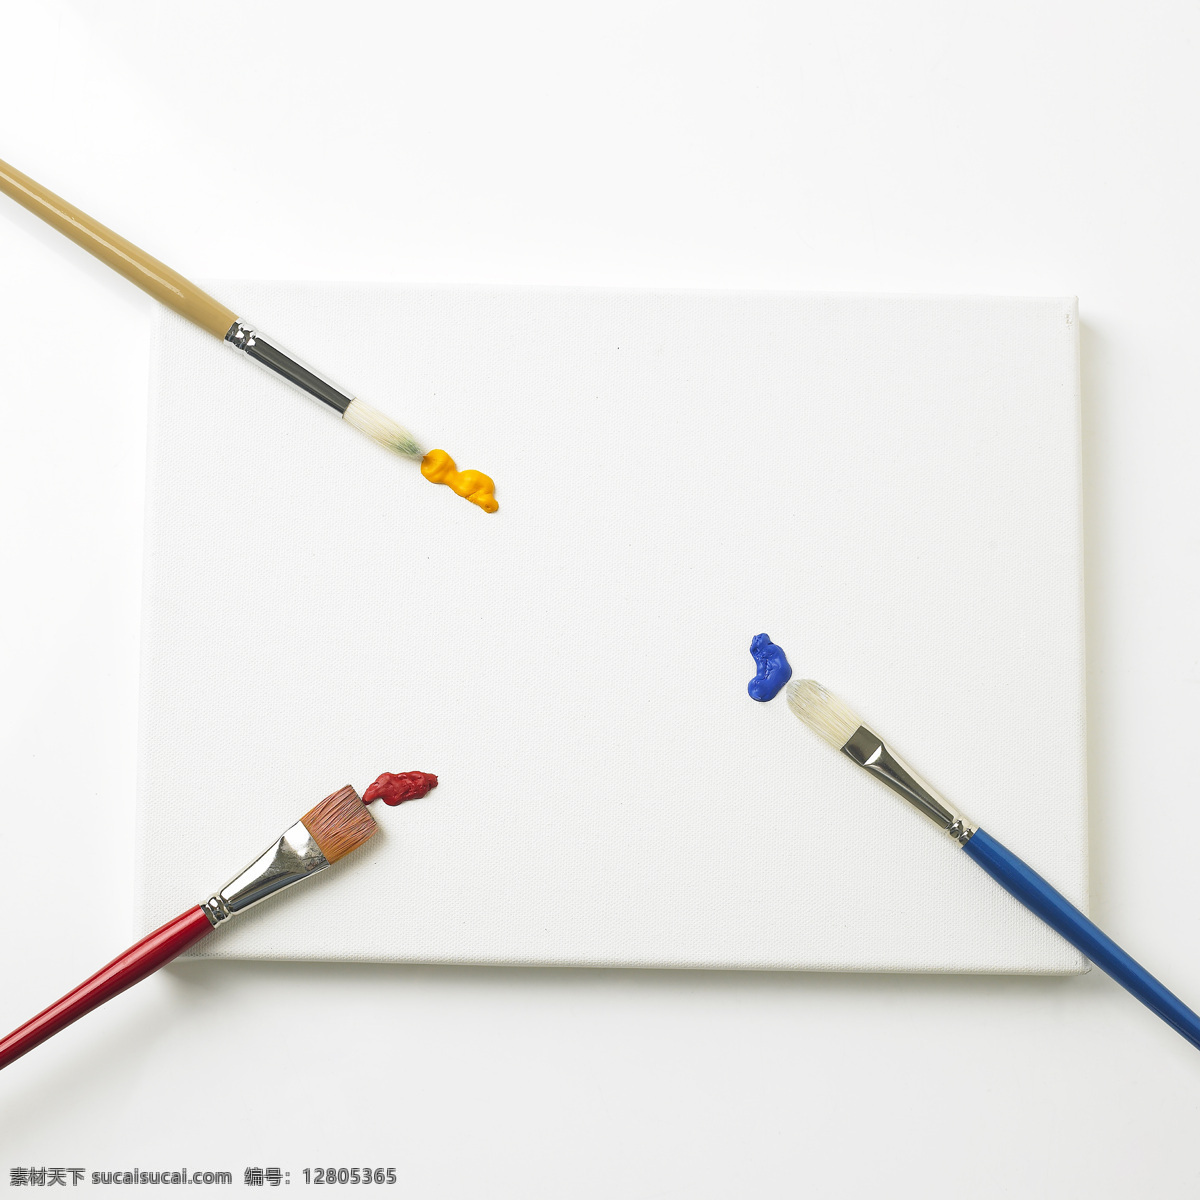 调色板 画笔 颜料 绘画调色 调色 排笔 油画笔 水粉笔 美术画笔 绘画工具 美术绘画 文化艺术